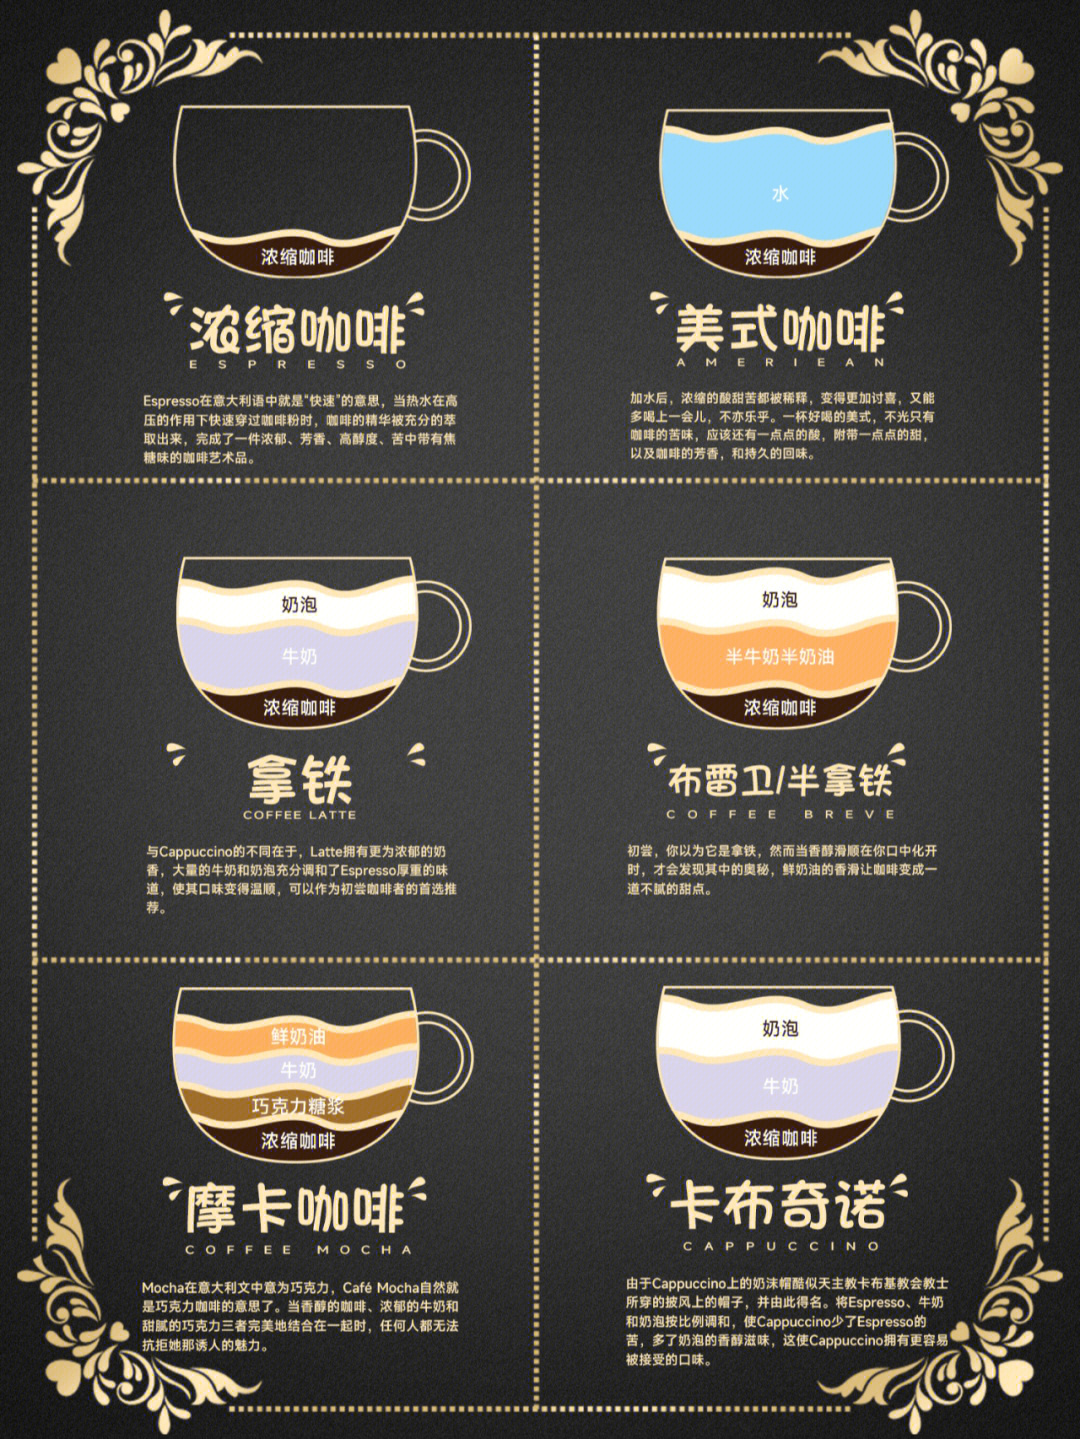 意式咖啡种类图解图片